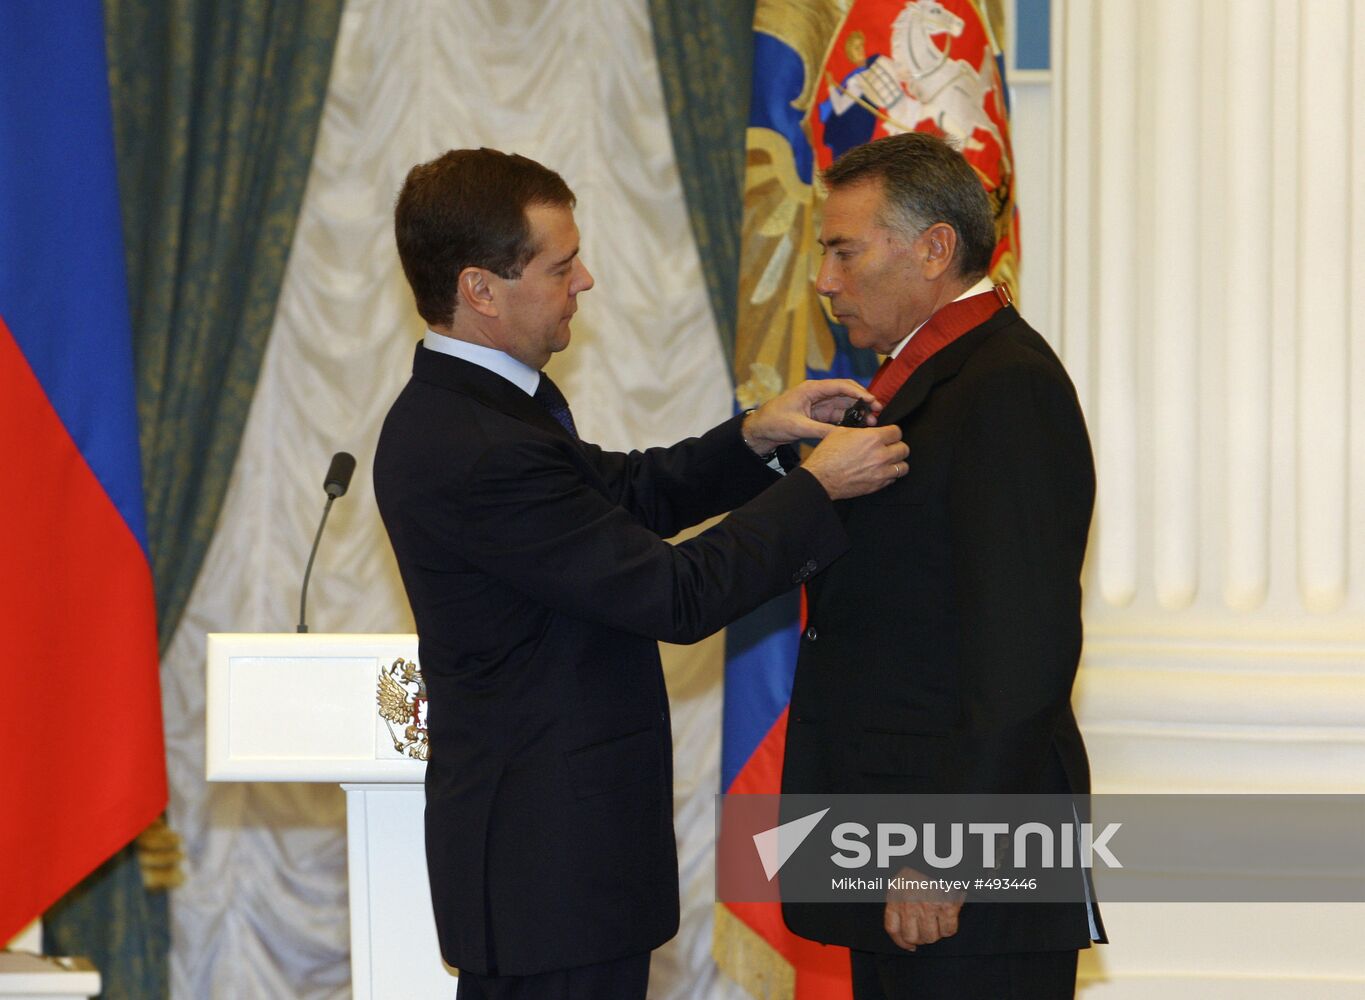 Dmitry Medvedev presenting state awards